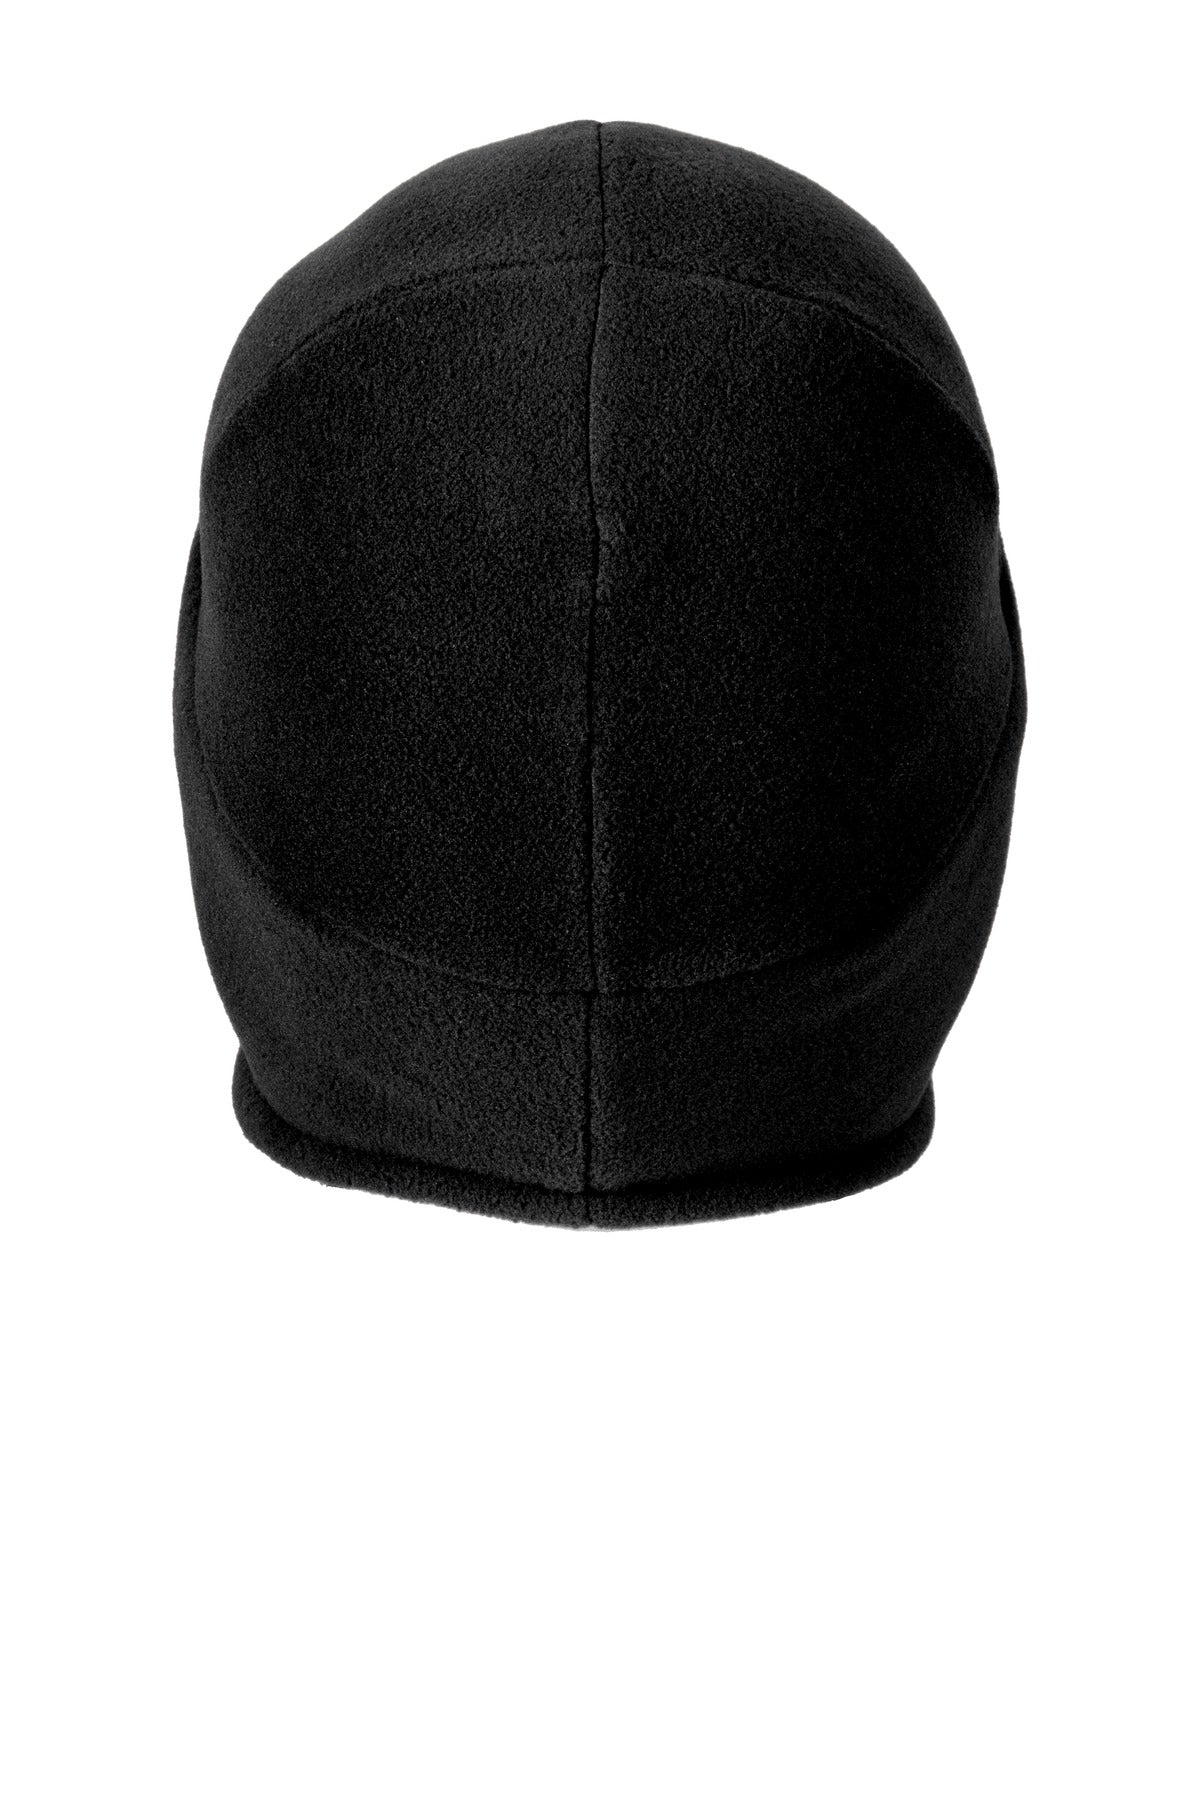 Carhartt  Fleece 2-In-1 Headwear. CTA202